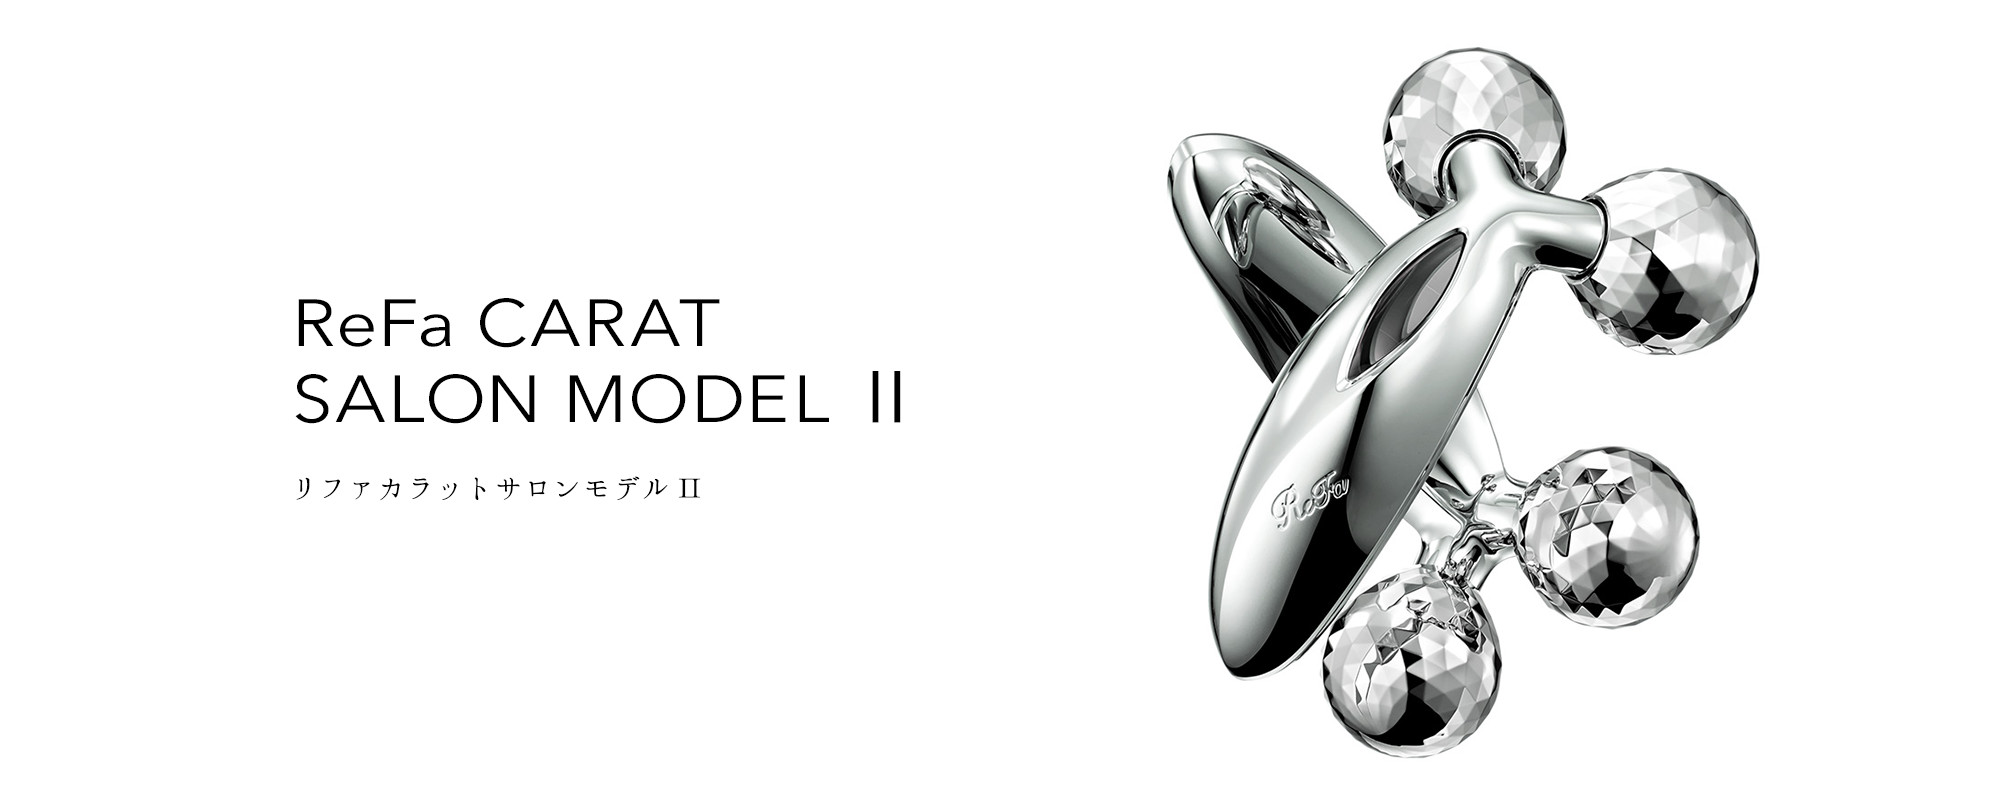 リファカラットサロンモデルⅡ - ReFa CARAT SALON MODELⅡ | 商品情報 